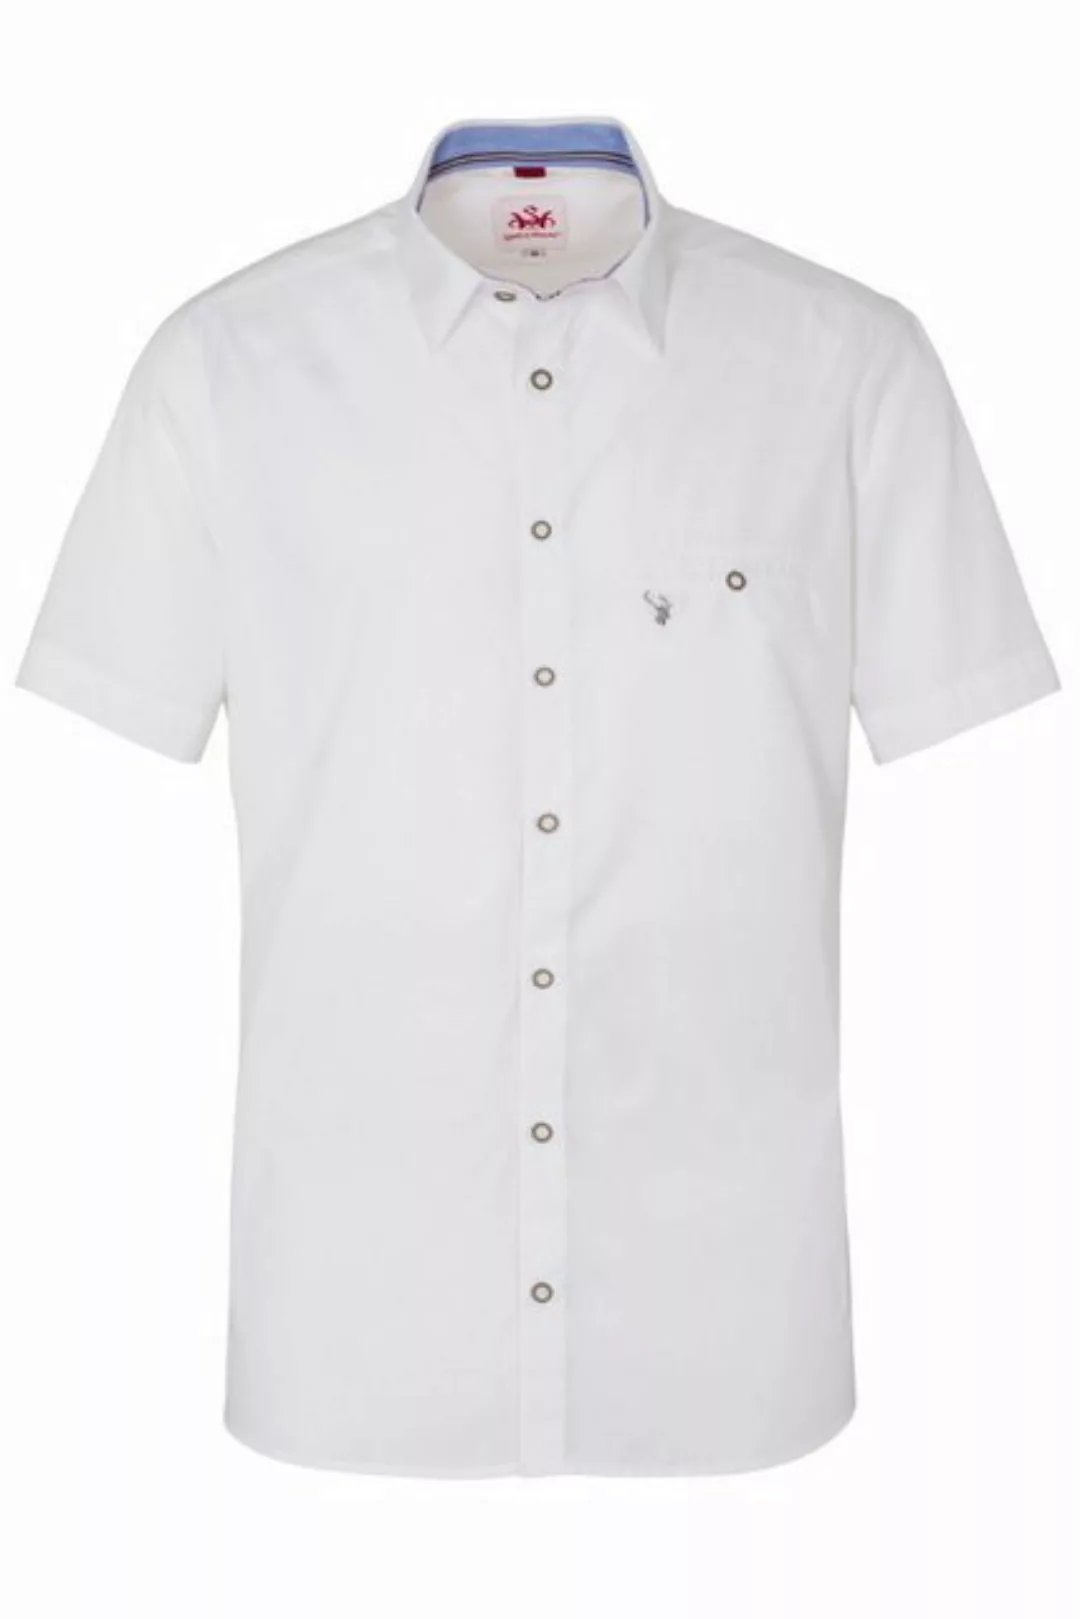 Spieth & Wensky Trachtenhemd Trachtenhemd - PERDIX KA - weiß/hellblau, weiß günstig online kaufen